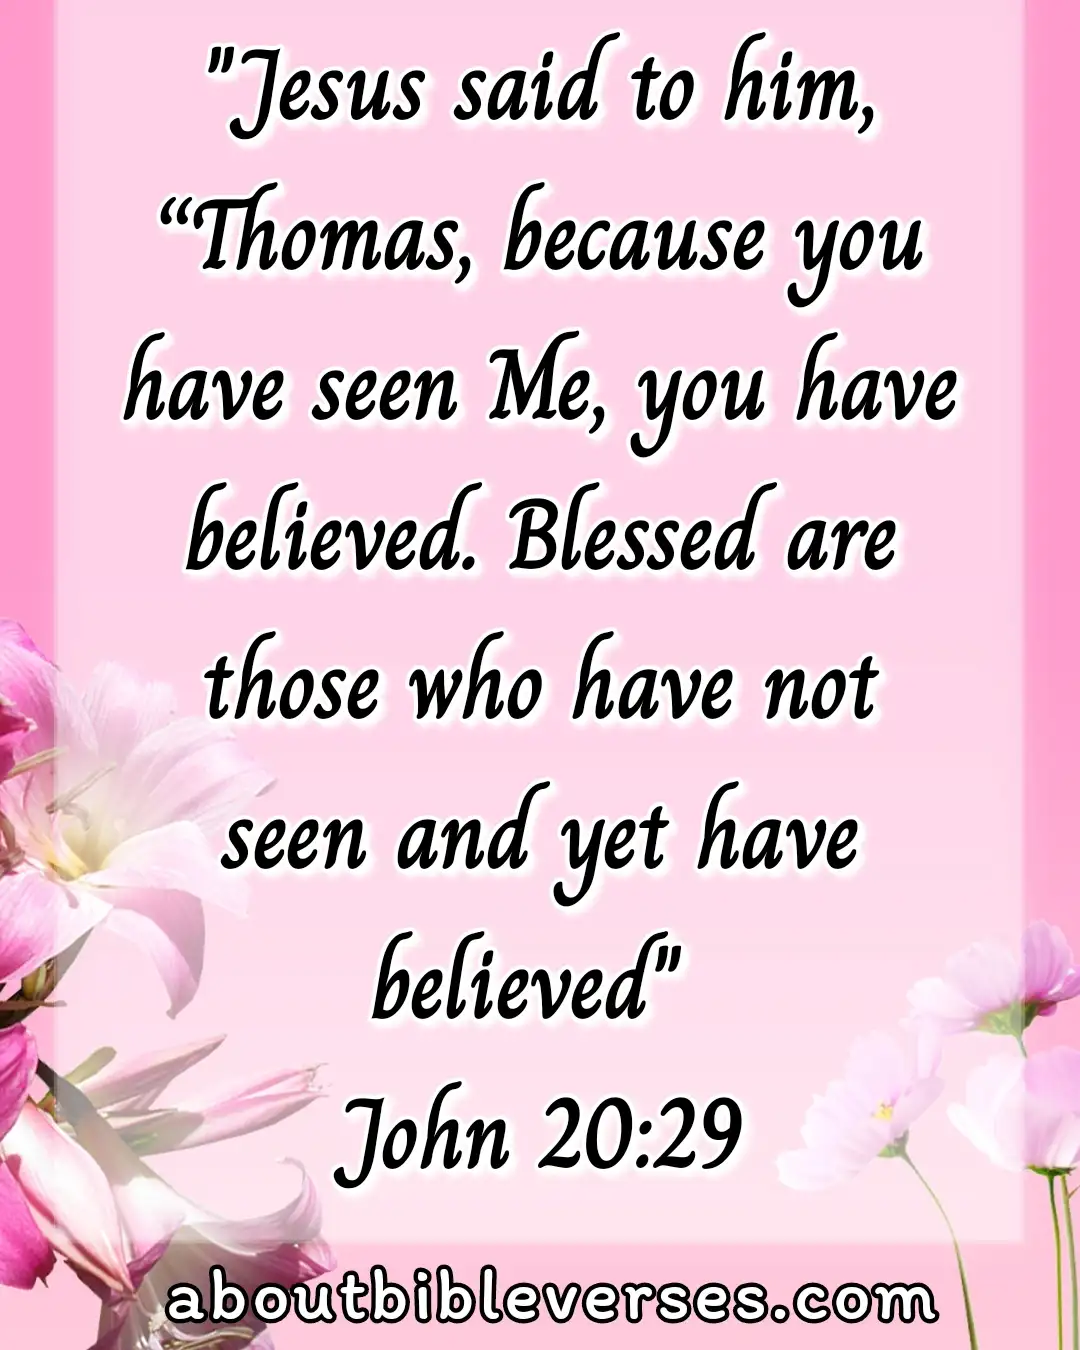 God Blessed Us (John 20:29)